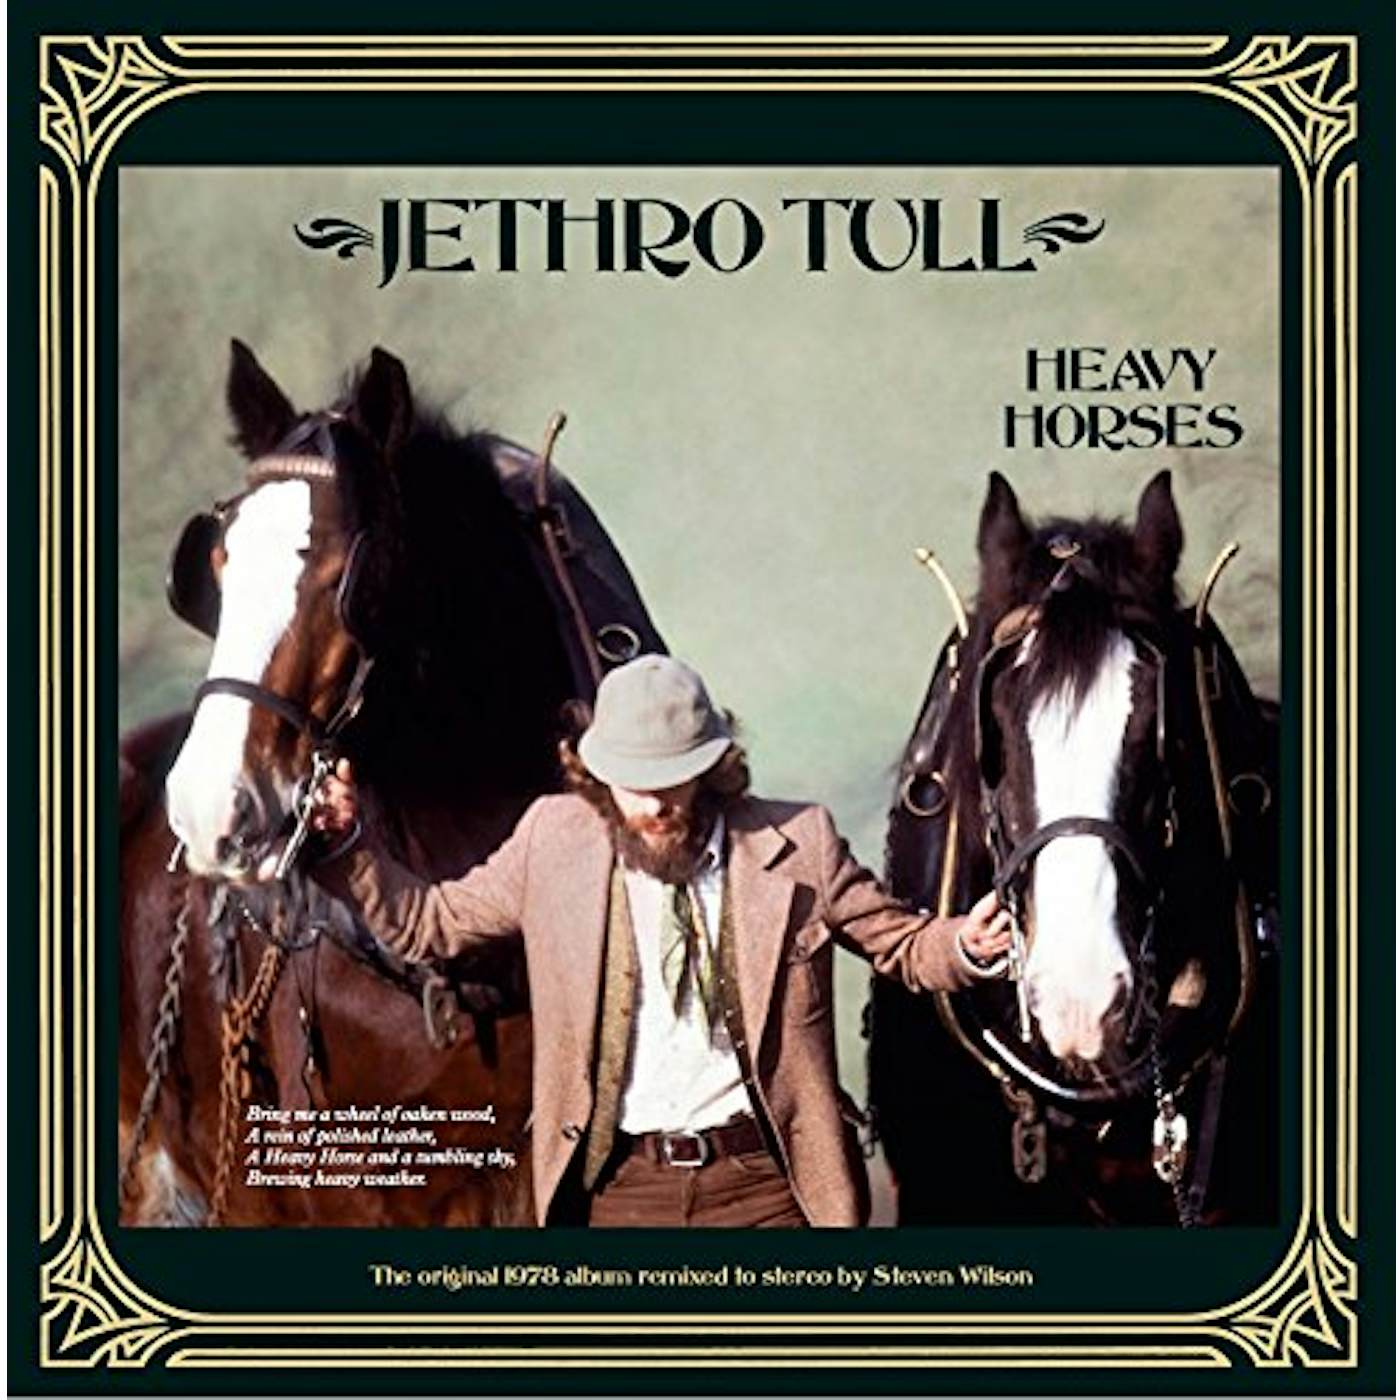 Jethro Tull Heavy Horses (Steven Wilson Remix) Vinyl Record